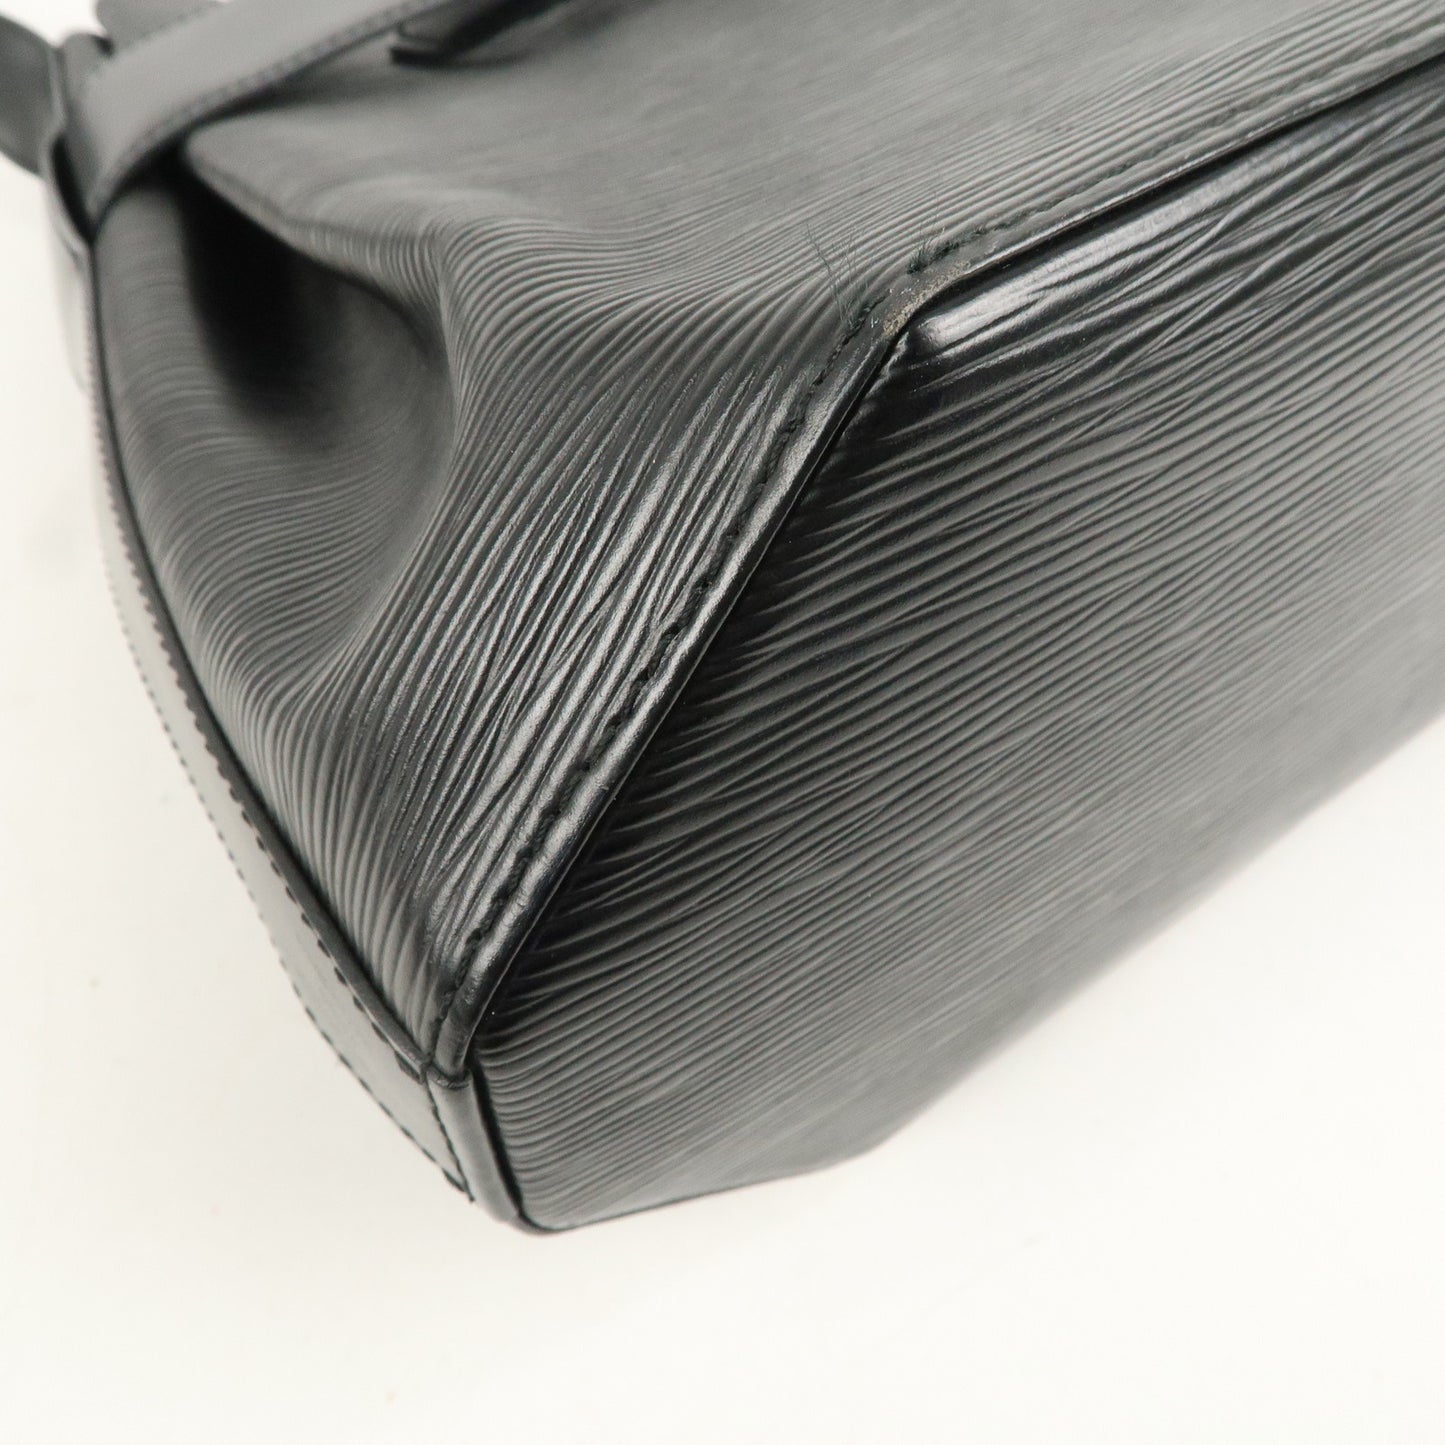 Louis Vuitton Epi Sac D'epaule PM Bucket Bag Noir Black M80157